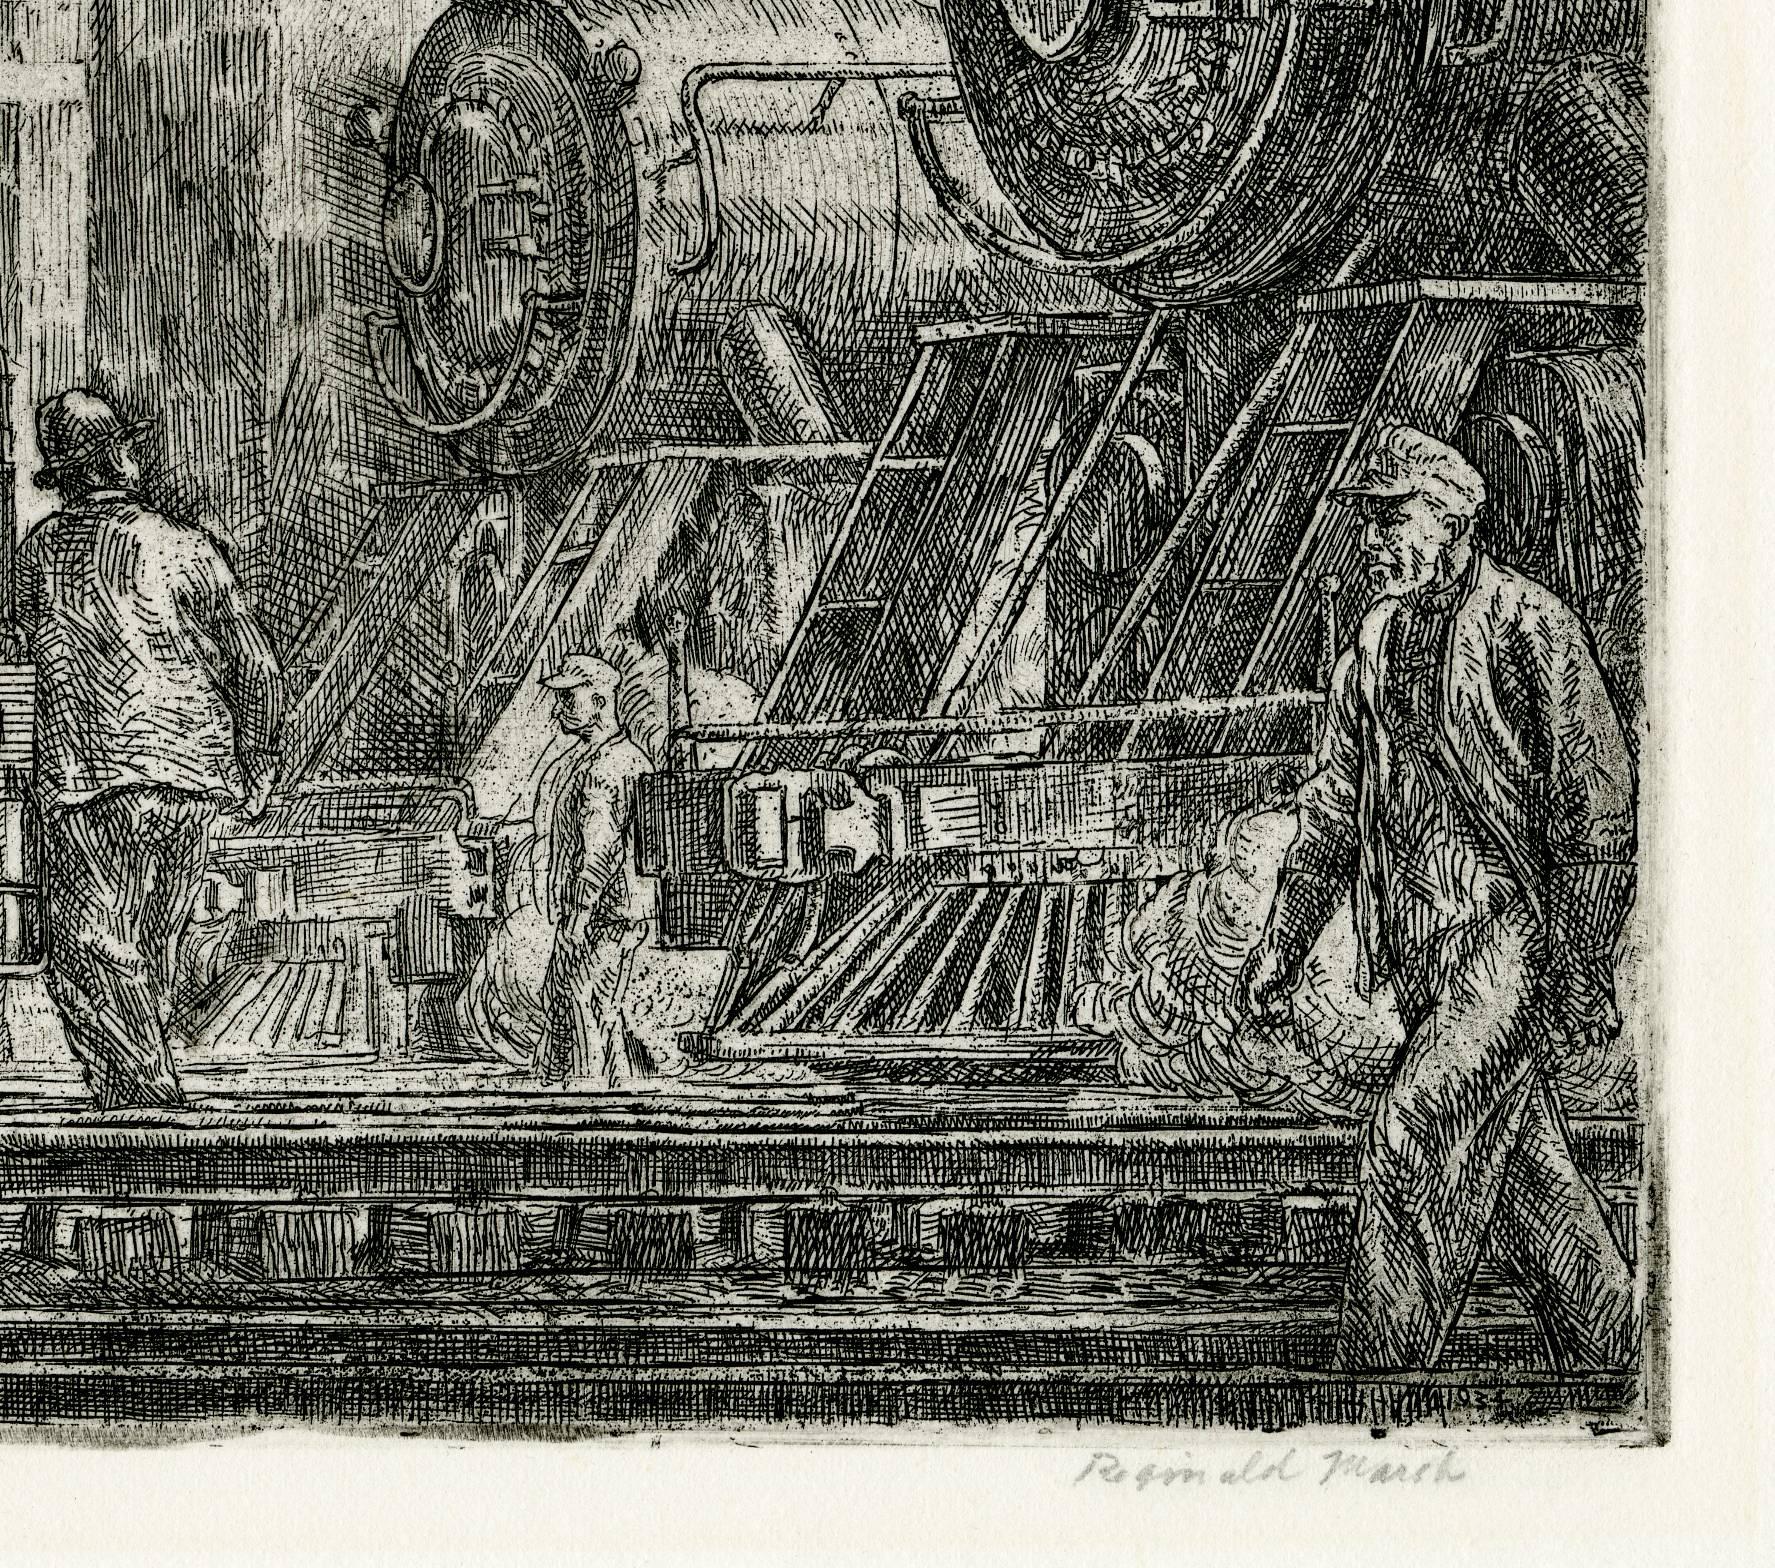 Locomotives Watering (Erie R.R. Locos Watering) - Print by Reginald Marsh